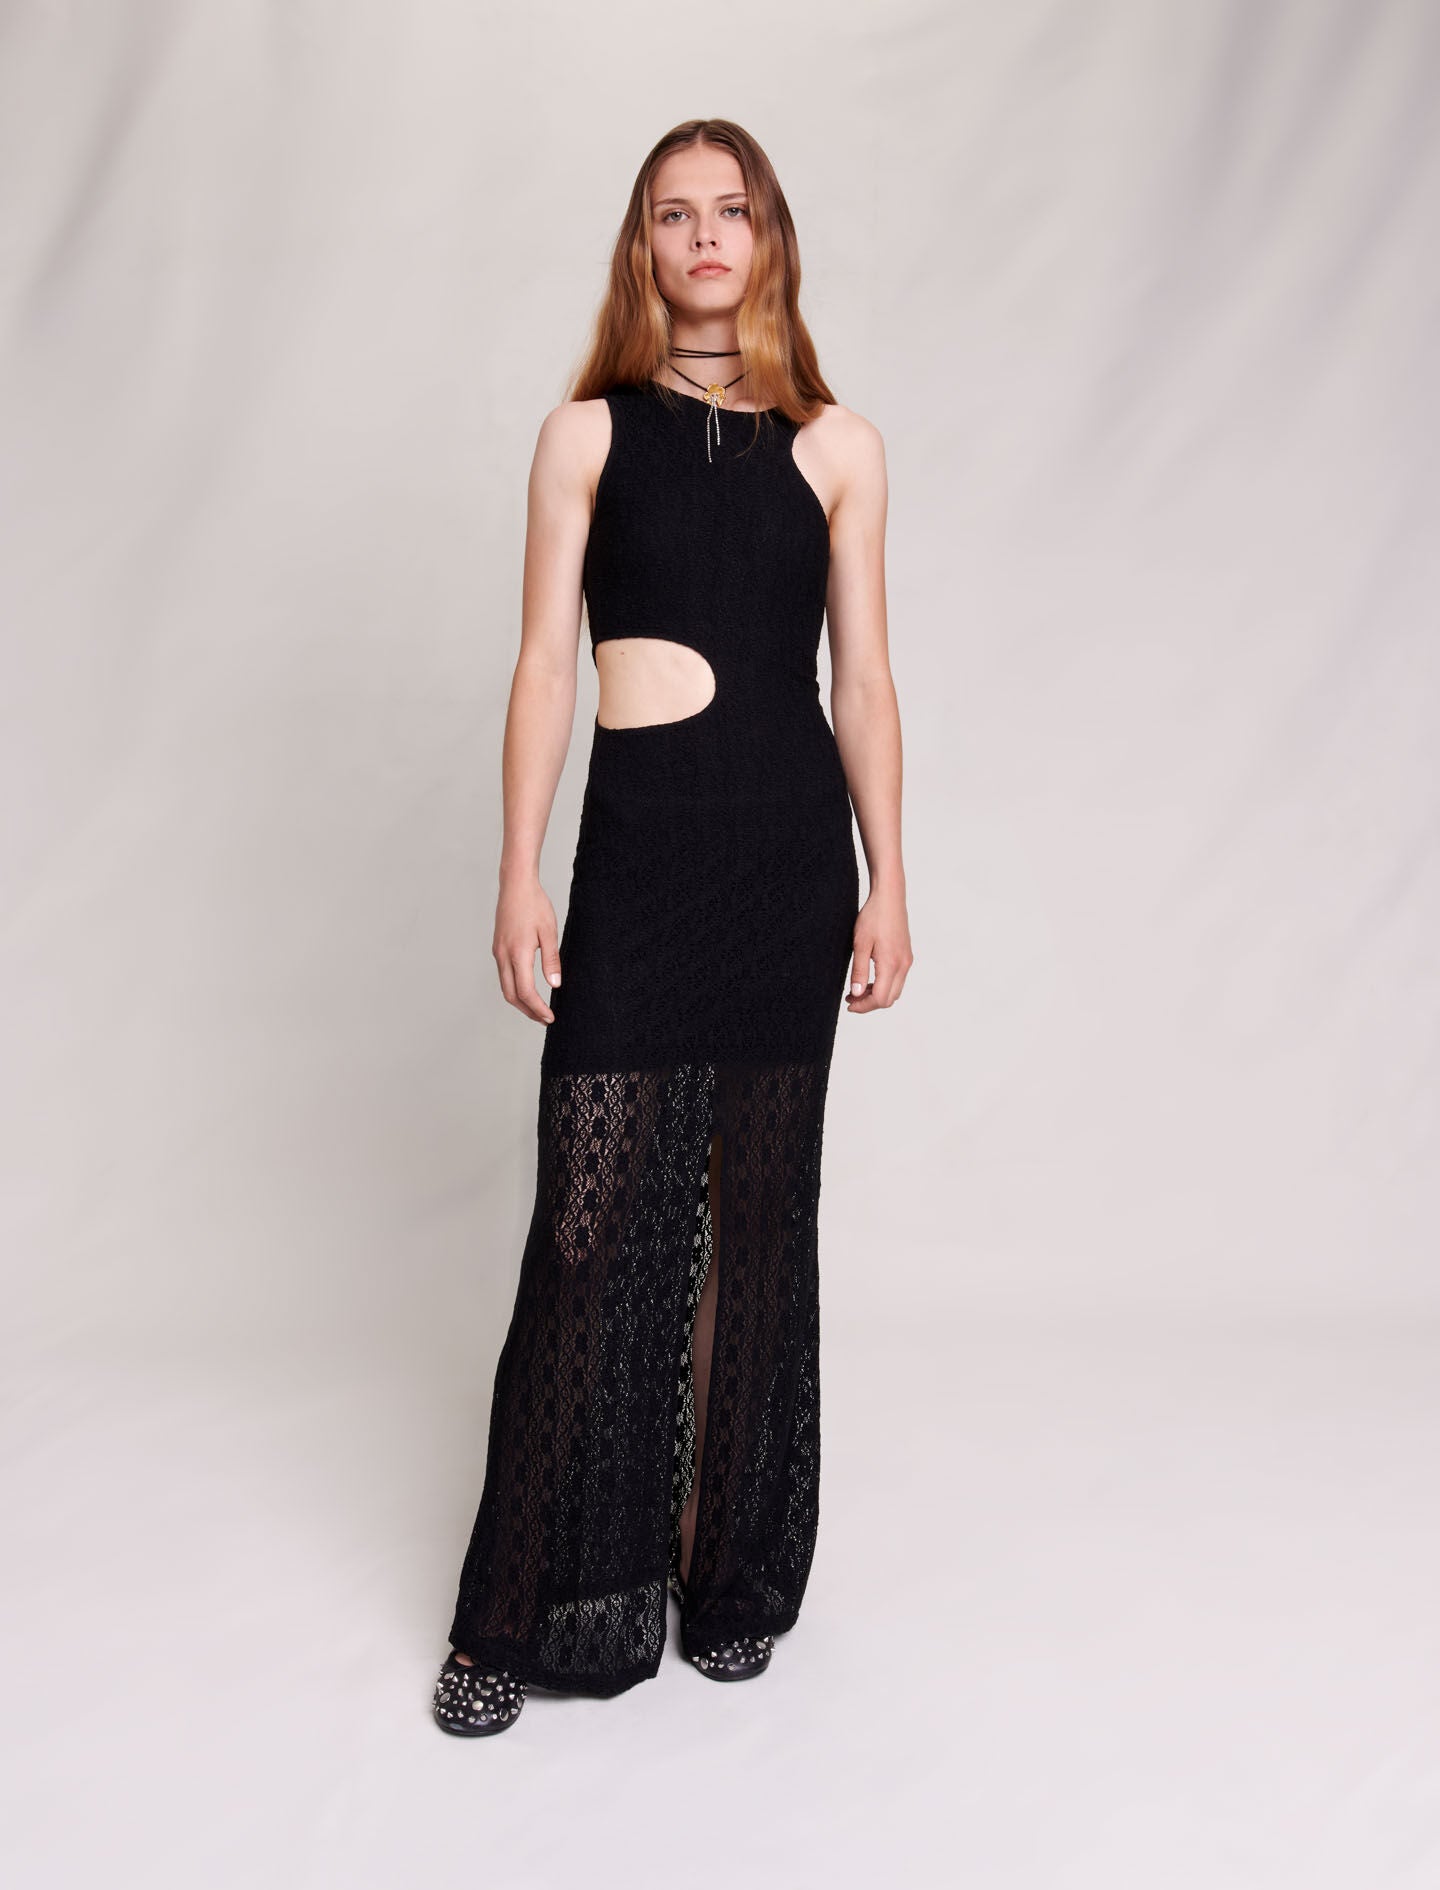 Shop Lace Maxi Dress Online in Dubai | Maje UAE – Maje.ae